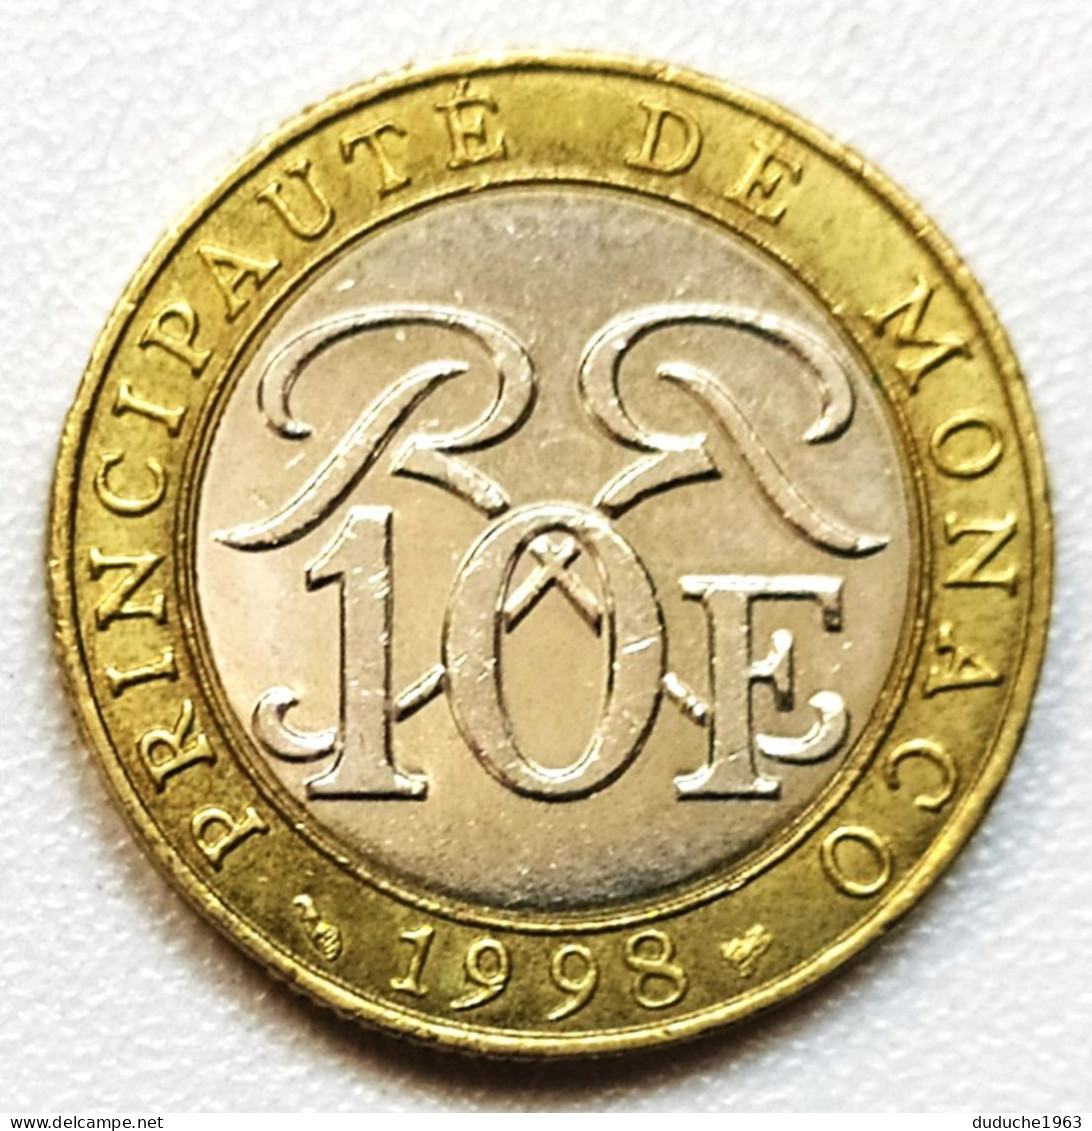 Monaco - 10 Francs 1998 - 1960-2001 New Francs